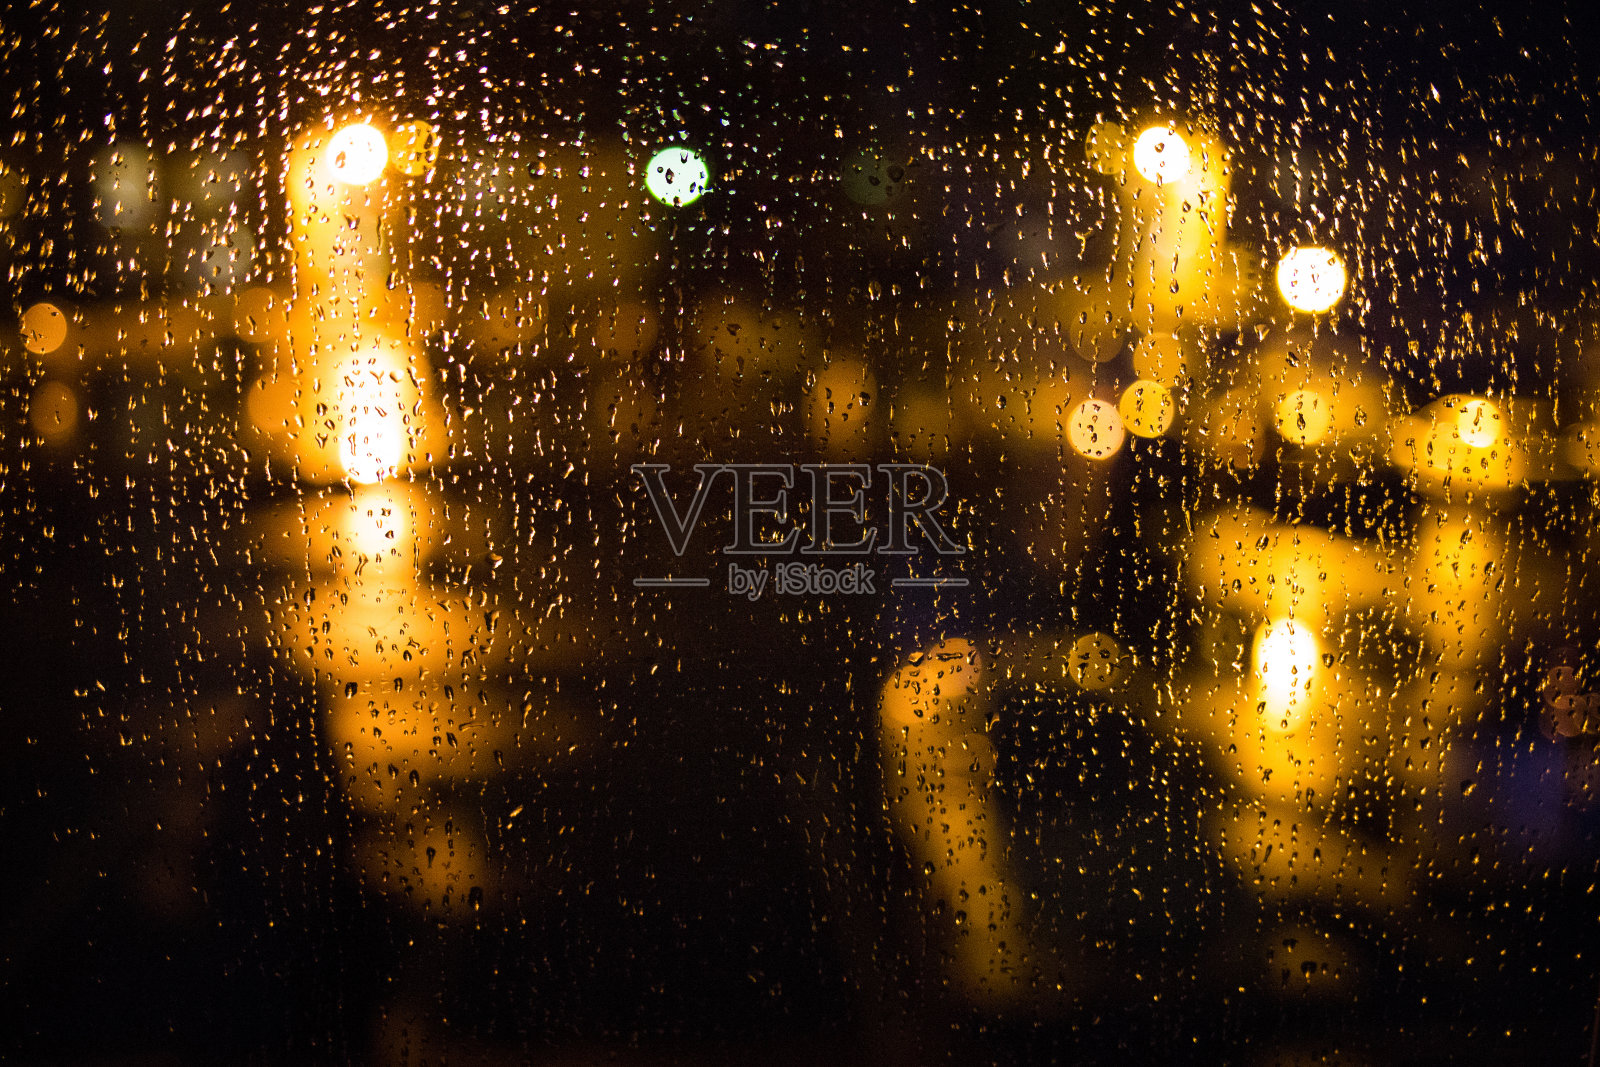 雨滴落在窗户上。宁静的夜晚照片摄影图片